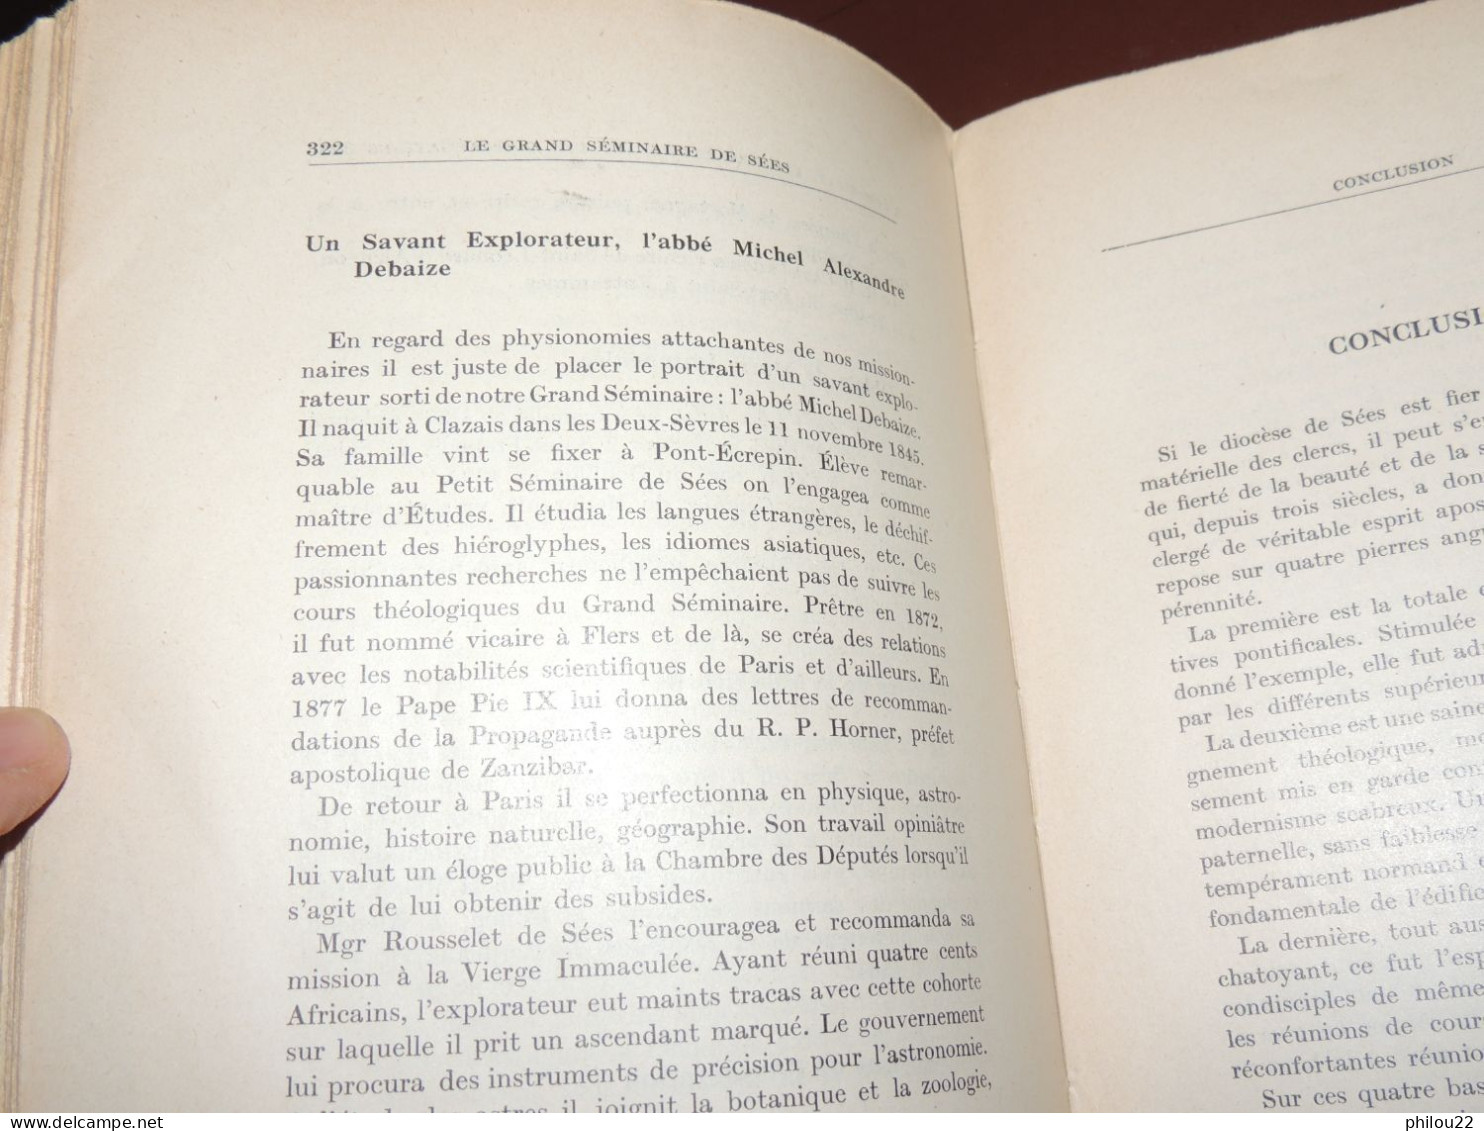 ORNE  NORMANDIE  Abbé TABOURIER - Le Grand Séminaire De Sées  1953  Envoi - Non Classés